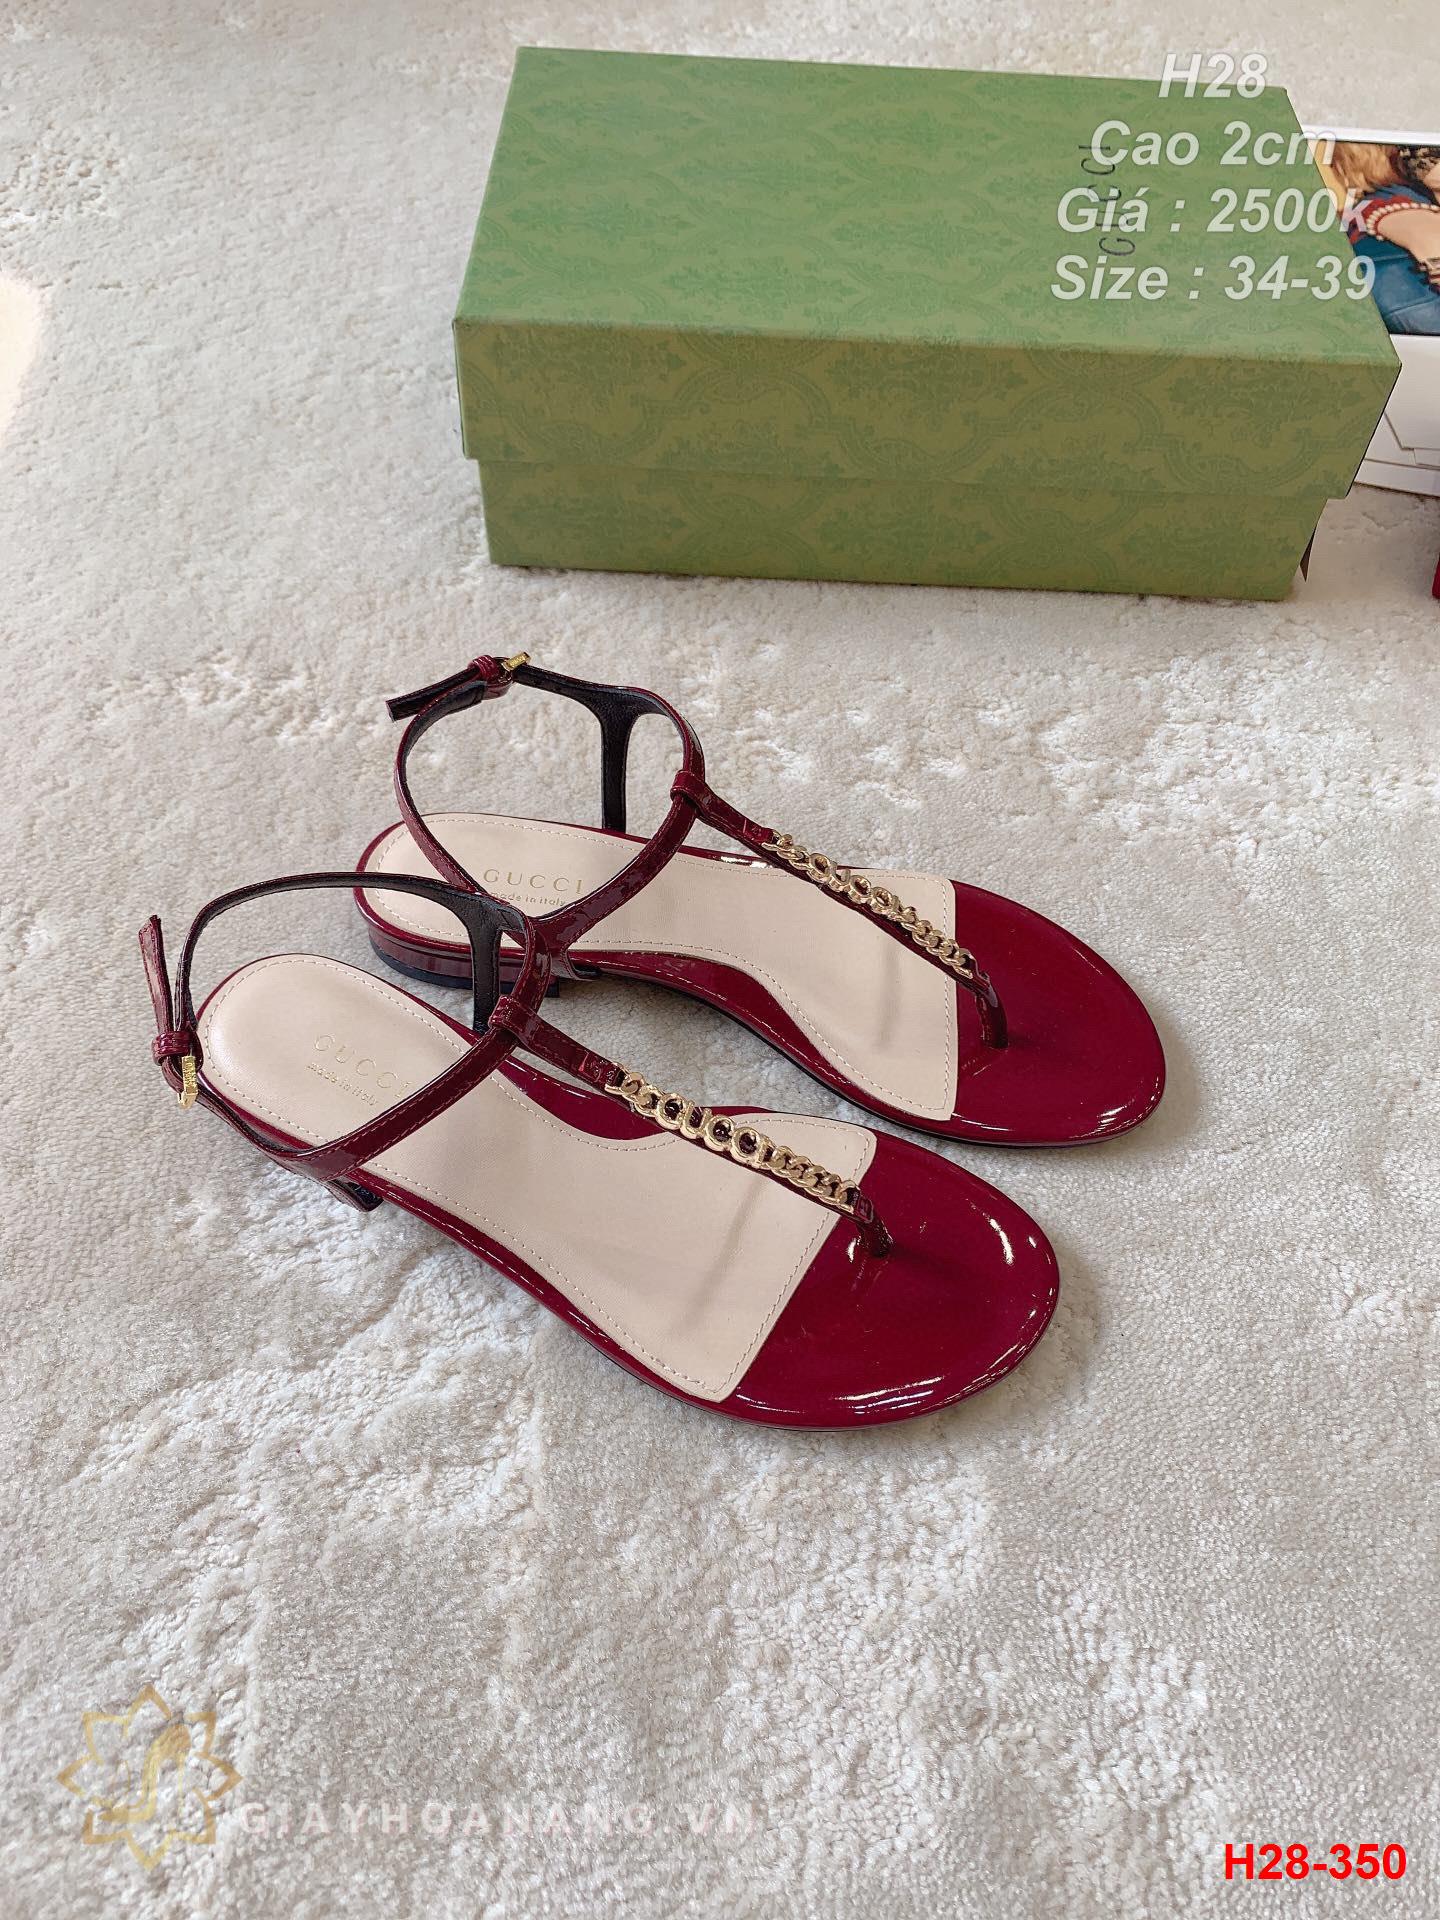 H28-350 Gucci sandal cao gót 2cm siêu cấp